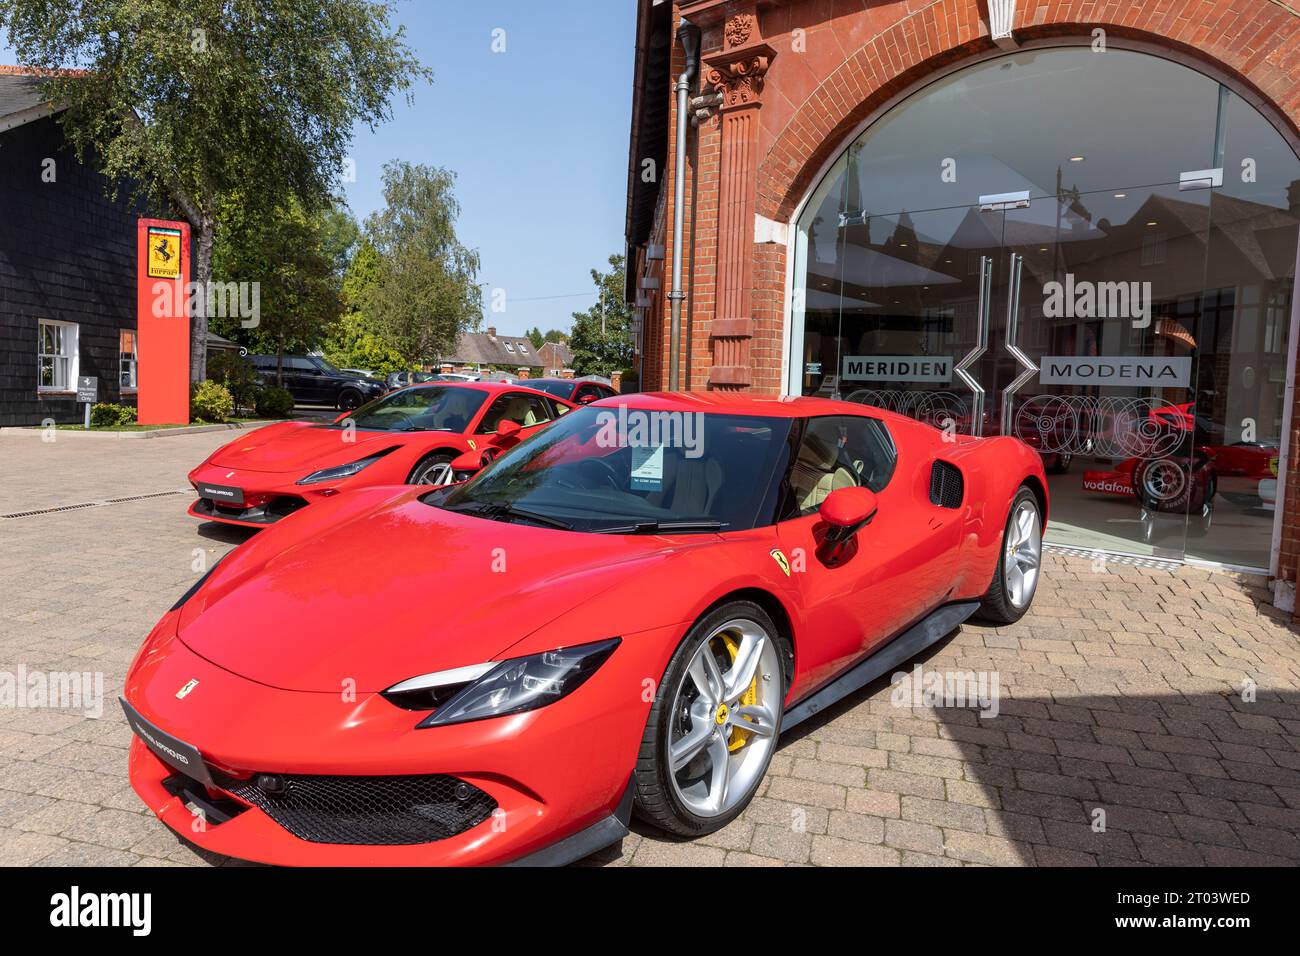 Concessionaria di auto sportive Ferrari, Meridien Modena a Lyndhurst, Hampshire, con Ferrari rosse sul piazzale, Inghilterra, Regno Unito Foto Stock